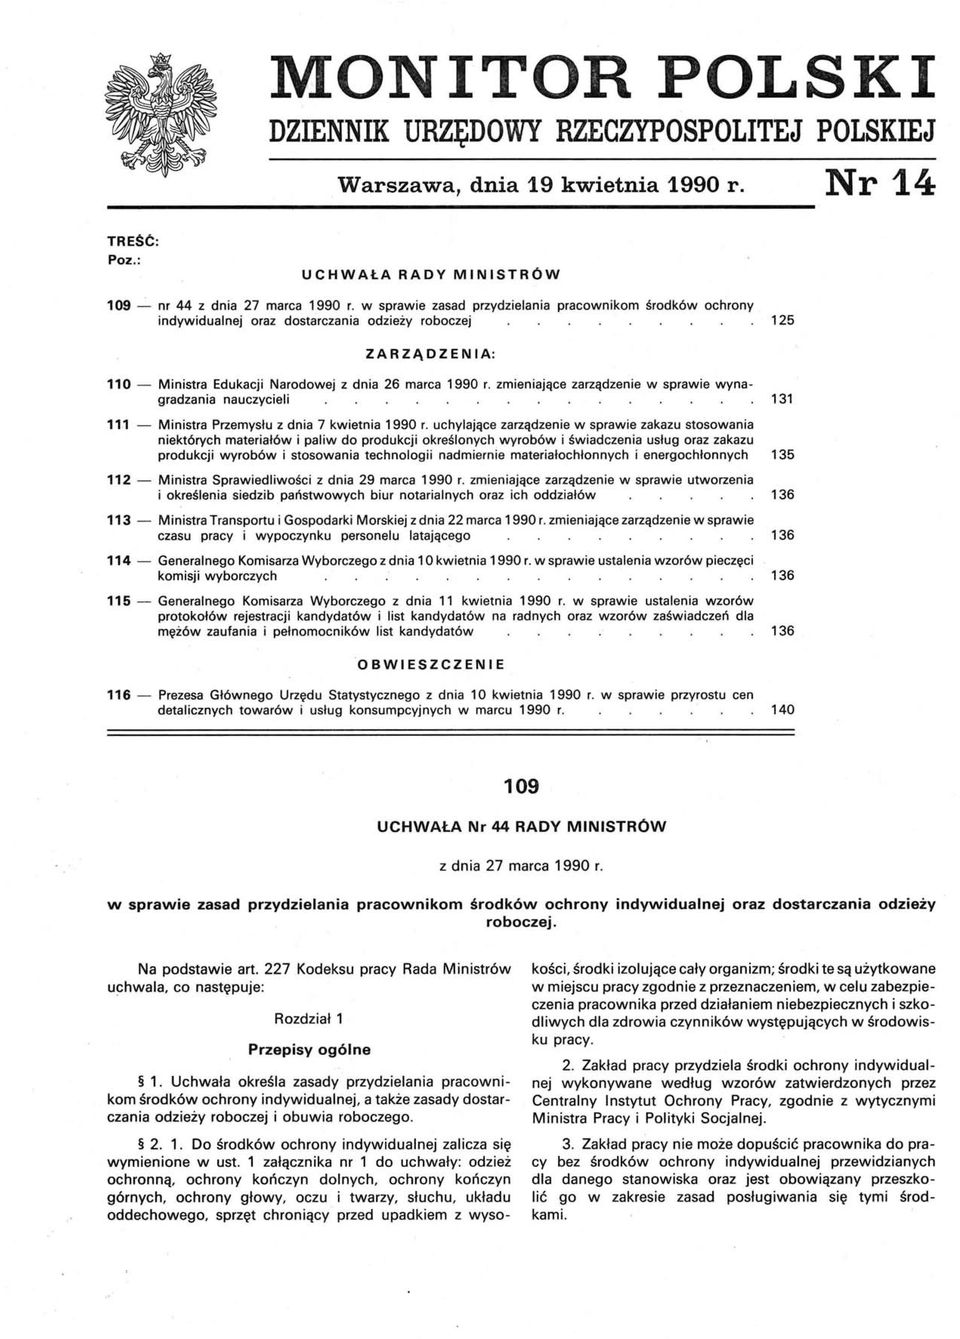 zmieniające zarządzenie w sprawie wynagradzania nauczycieli 131 11.1 - Ministra Przemysłu z dnia 7 kwietnia 1990 r.